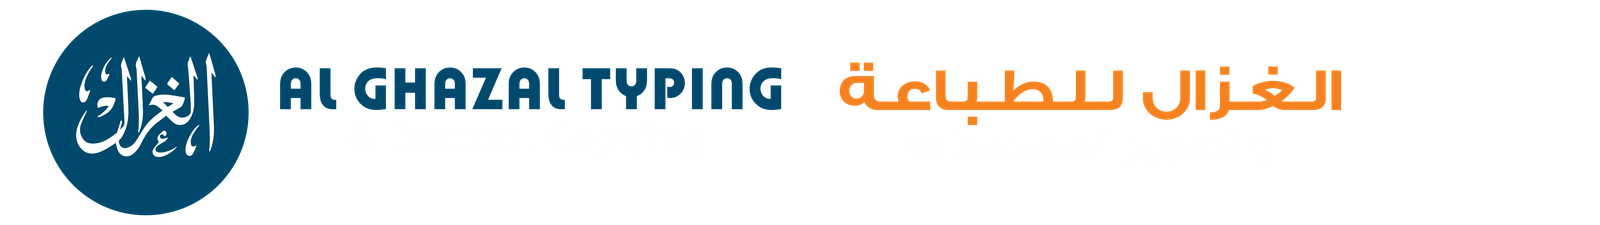 Al GHAZAL TYPING